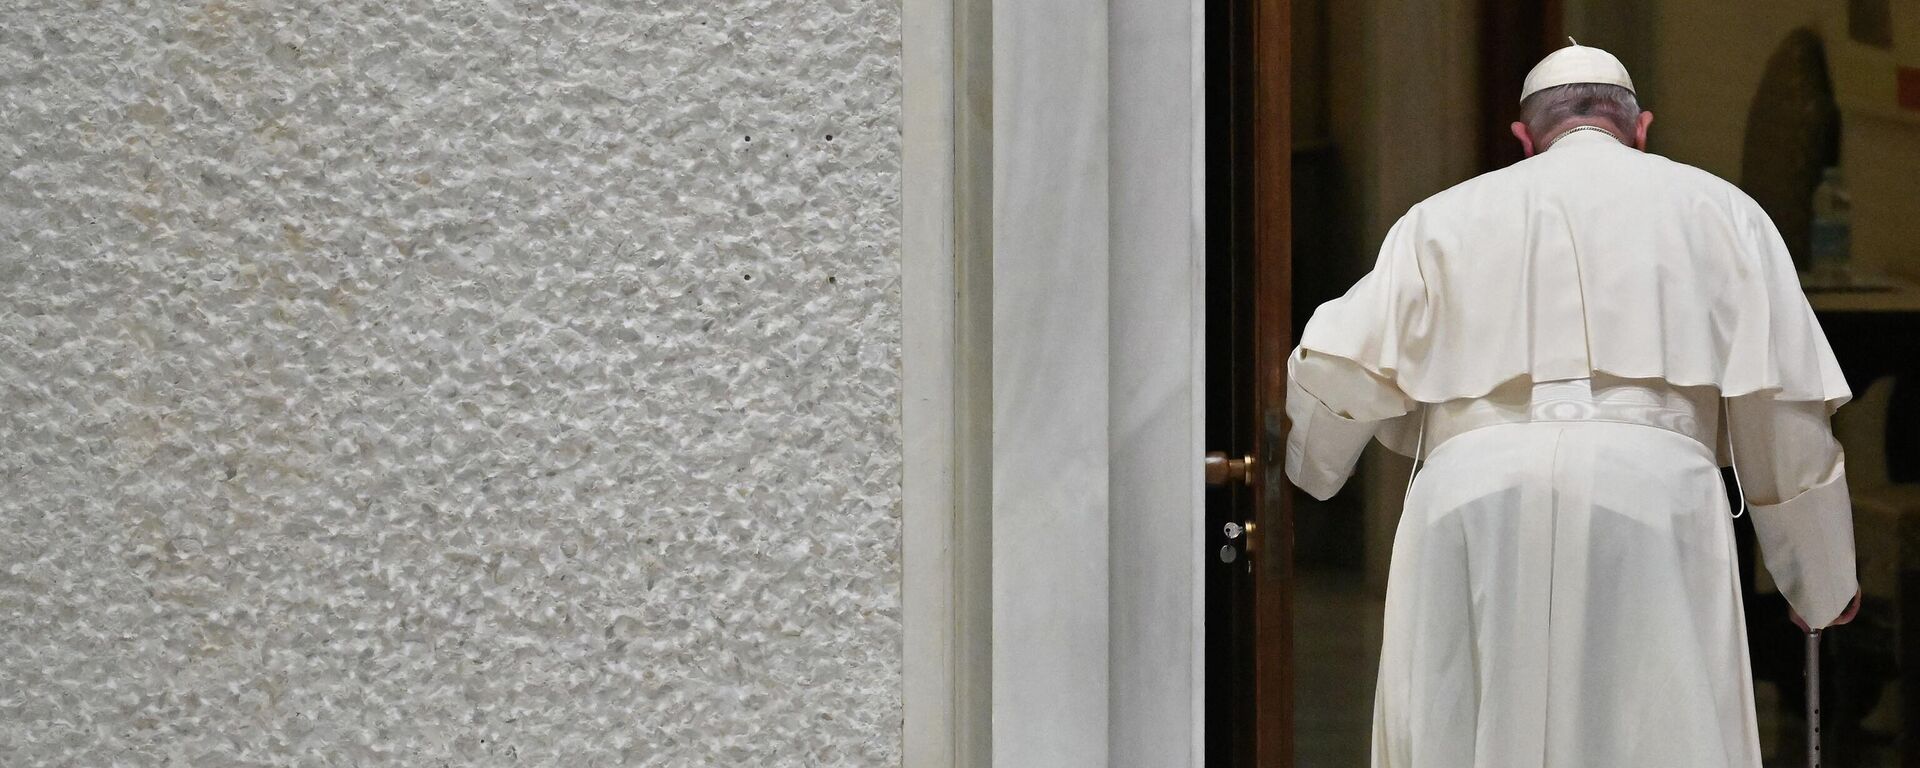 Папа Франциск уходит по окончании аудиенции в Ватикане. Архивное фото - Sputnik Кыргызстан, 1920, 16.12.2022